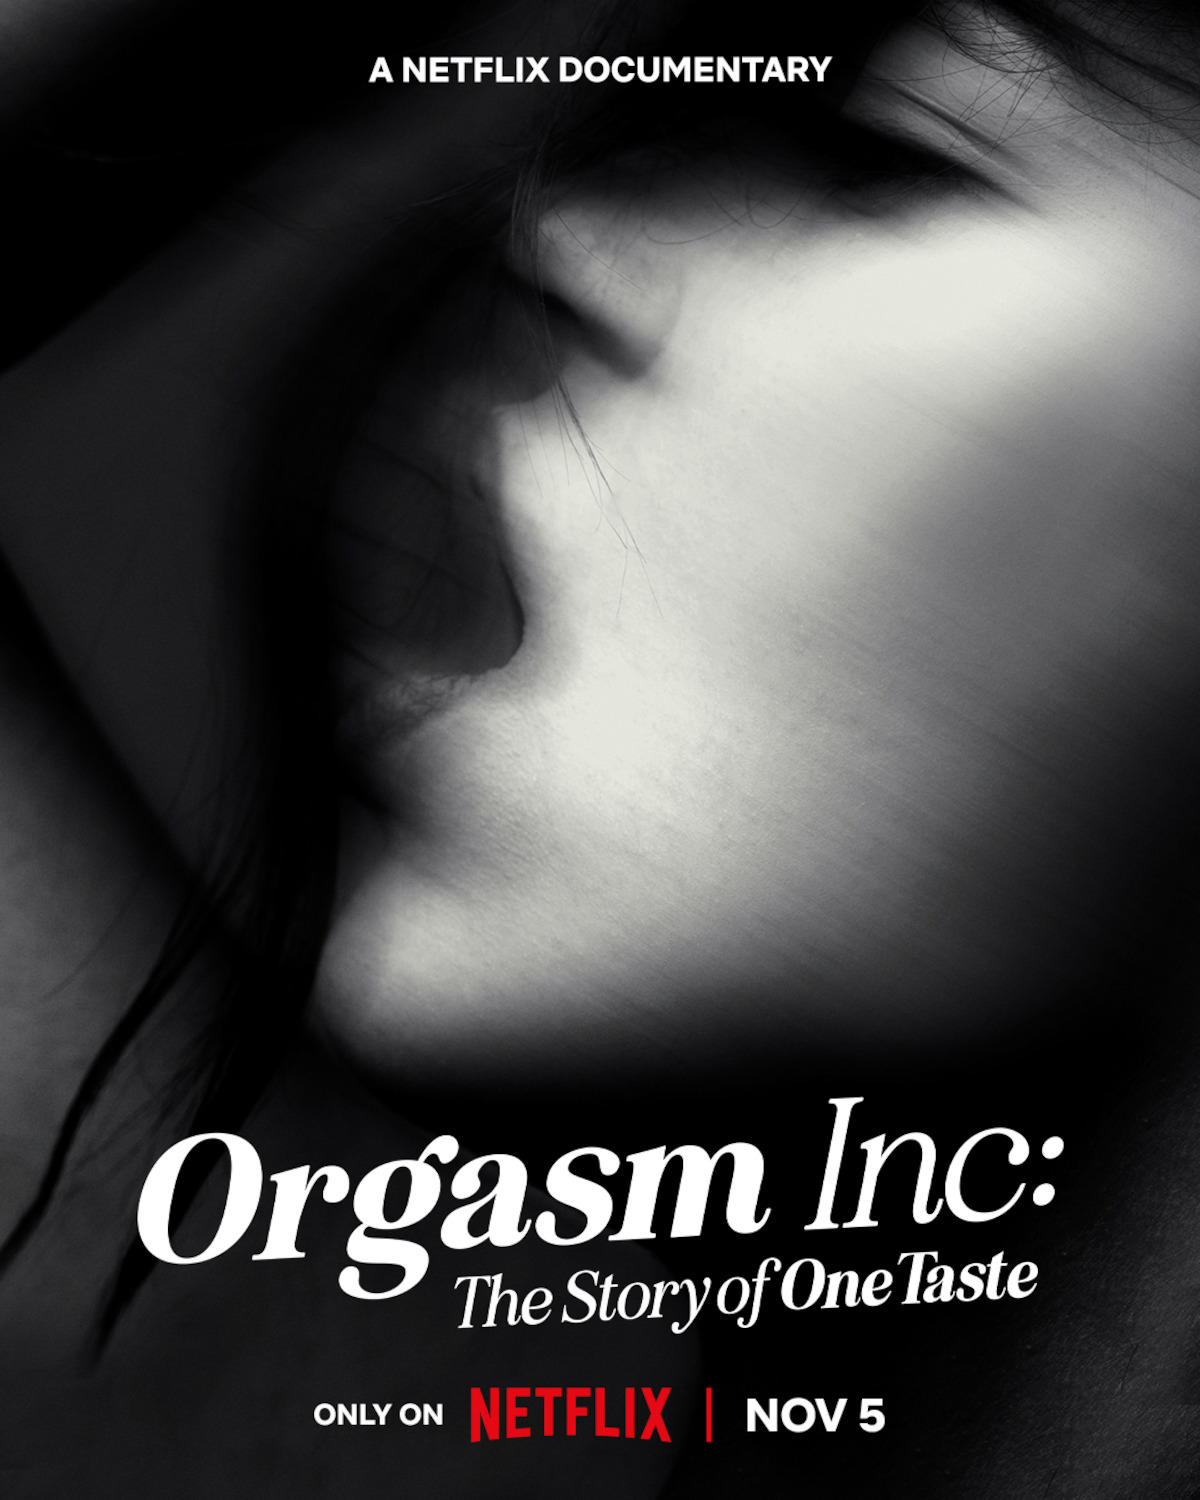 OneTaste Documentary About Nicole Daedone Orgasm Inc.